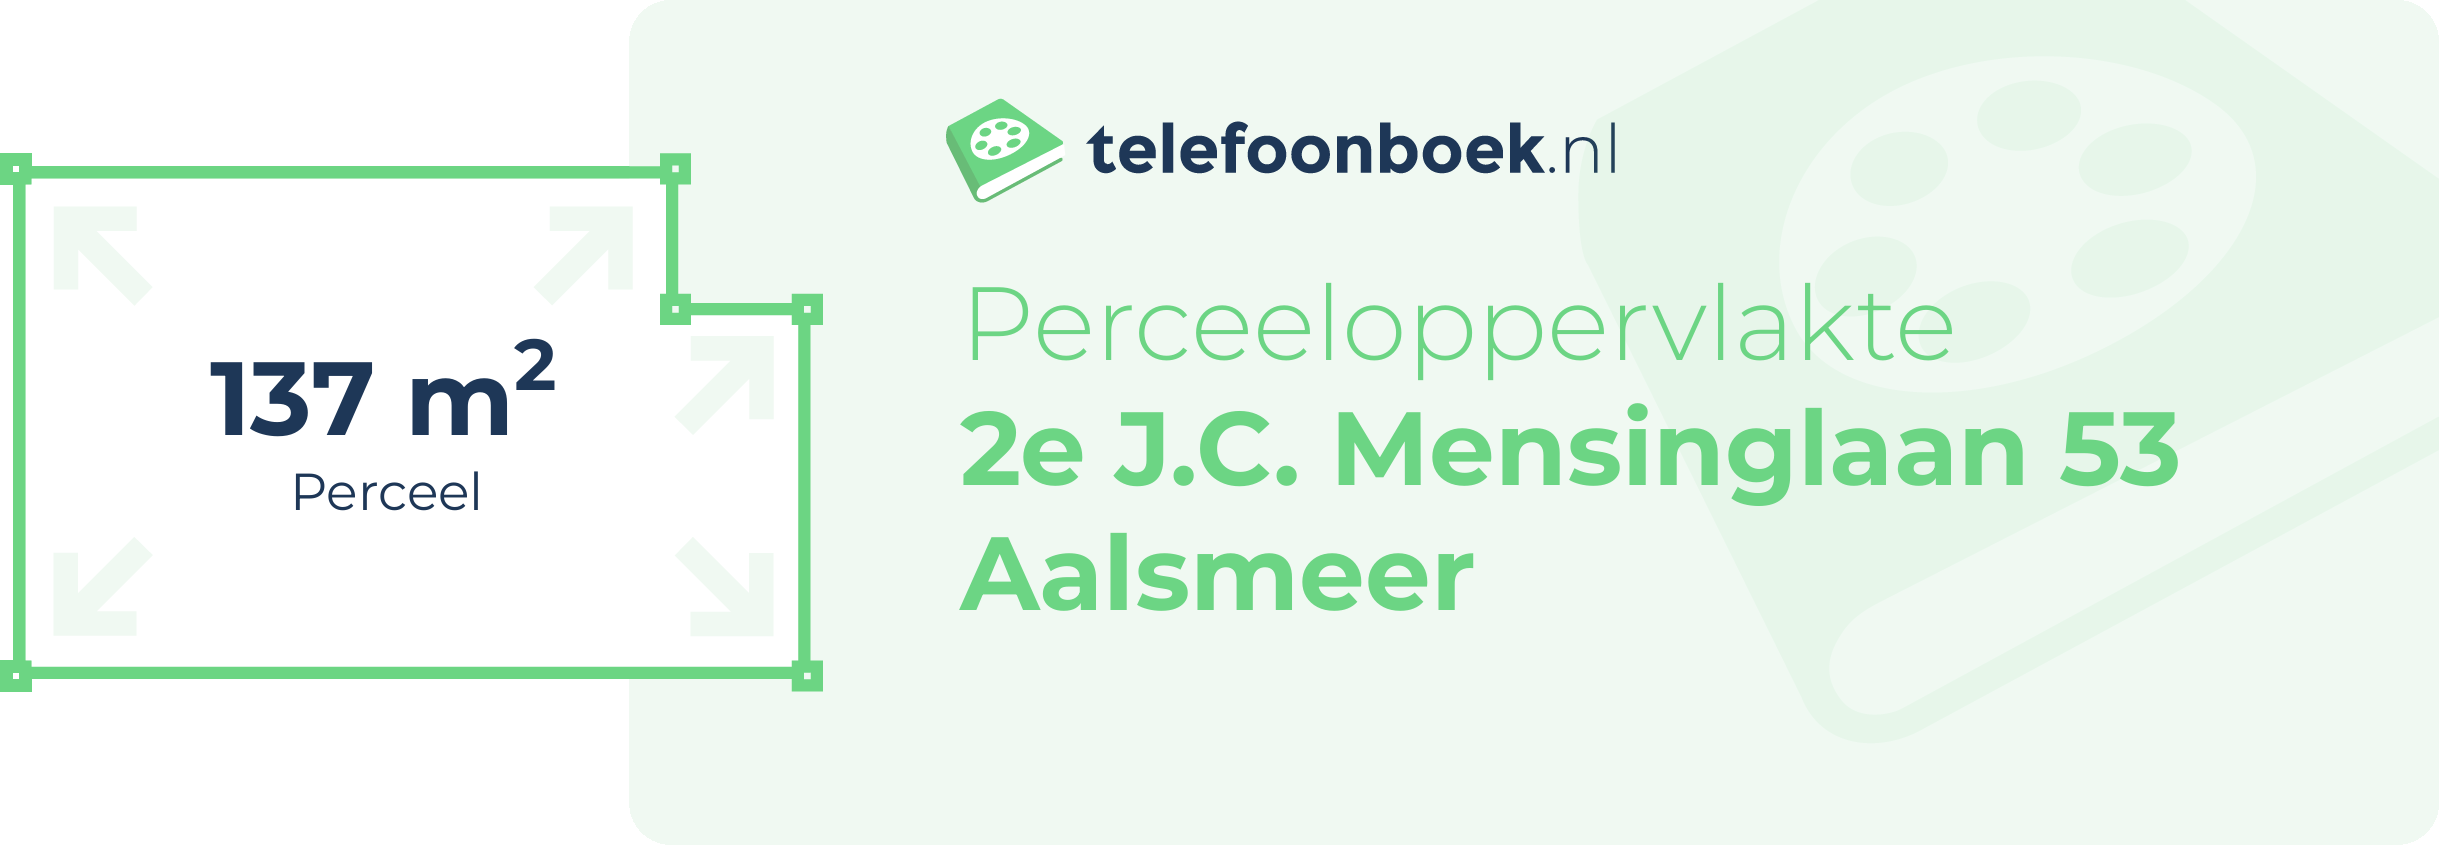 Perceeloppervlakte 2e J.C. Mensinglaan 53 Aalsmeer